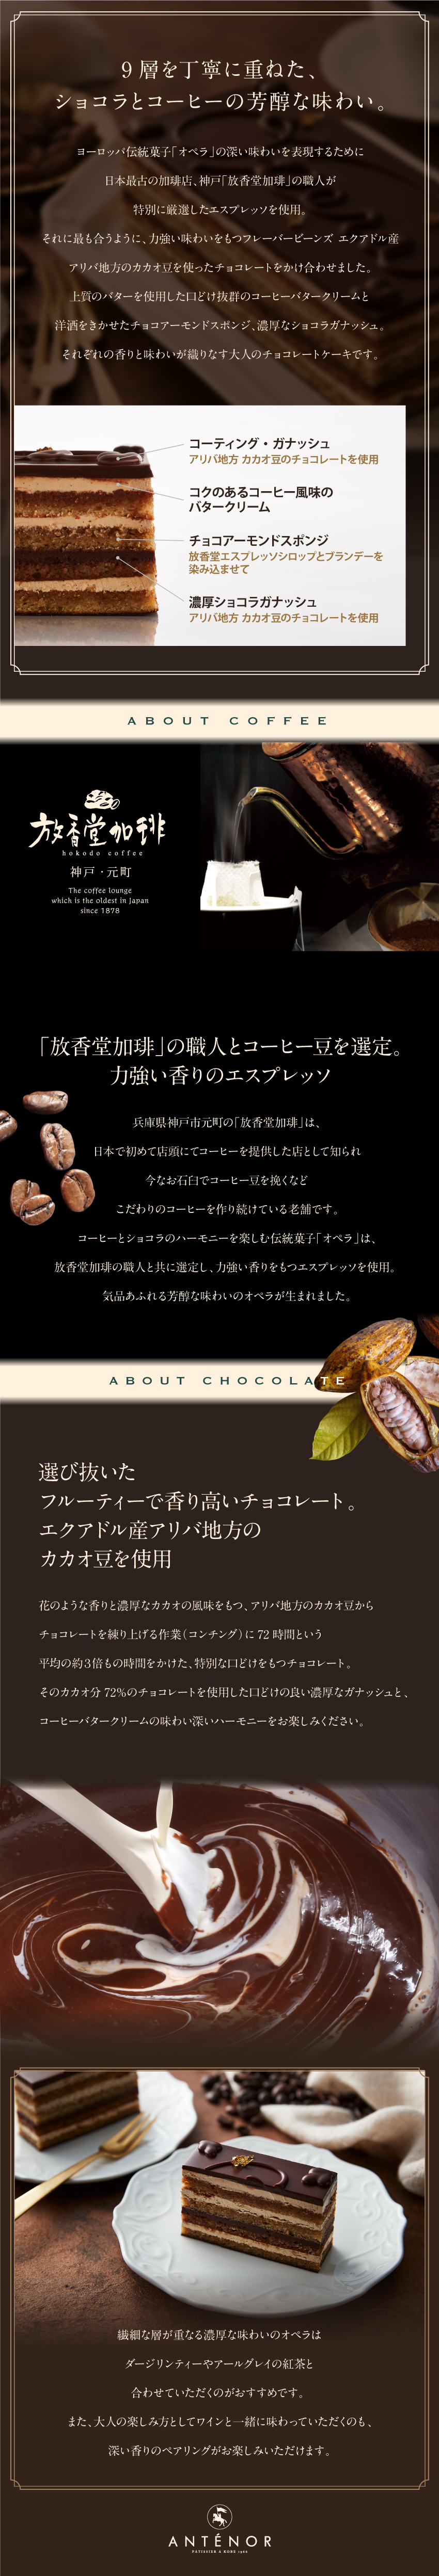 9層を丁寧に重ねた、ショコラとコーヒーの芳醇な味わい。神戸「放香堂加琲」の職人が特別に厳選したエスプレッソを使用。